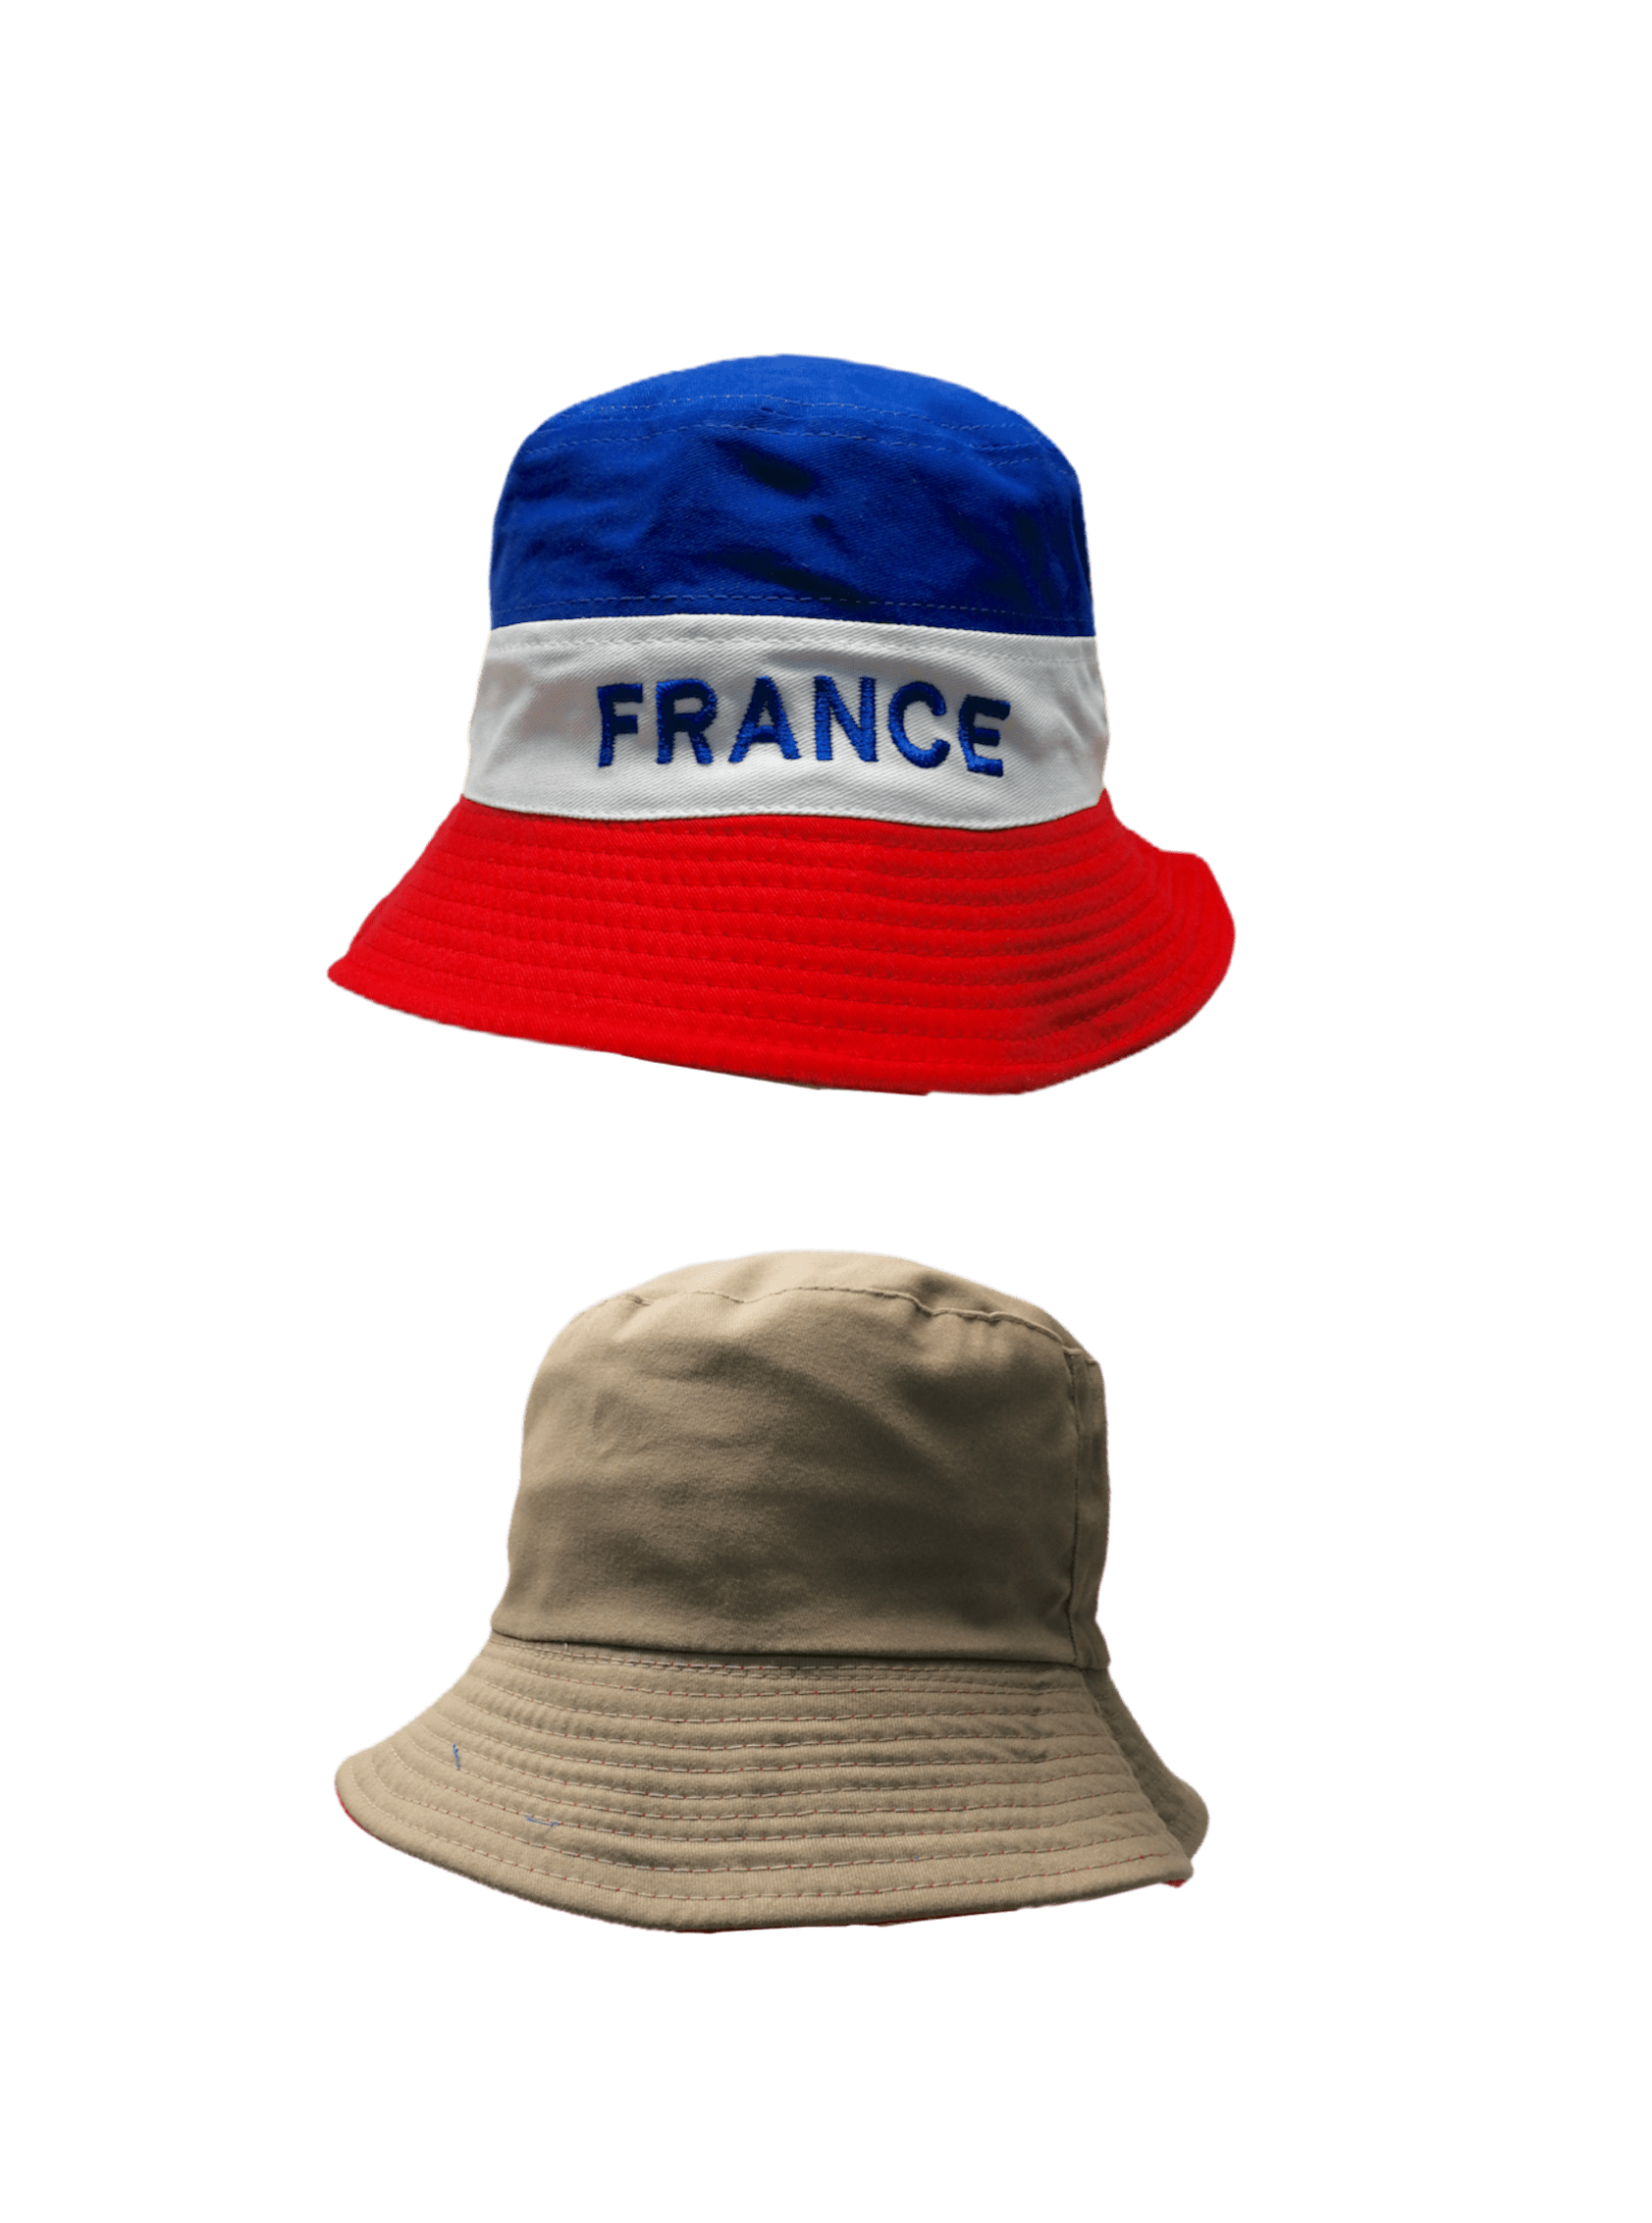 Chapeaux bob France réversible (x6)     3,50€/unité | Grossiste-pro